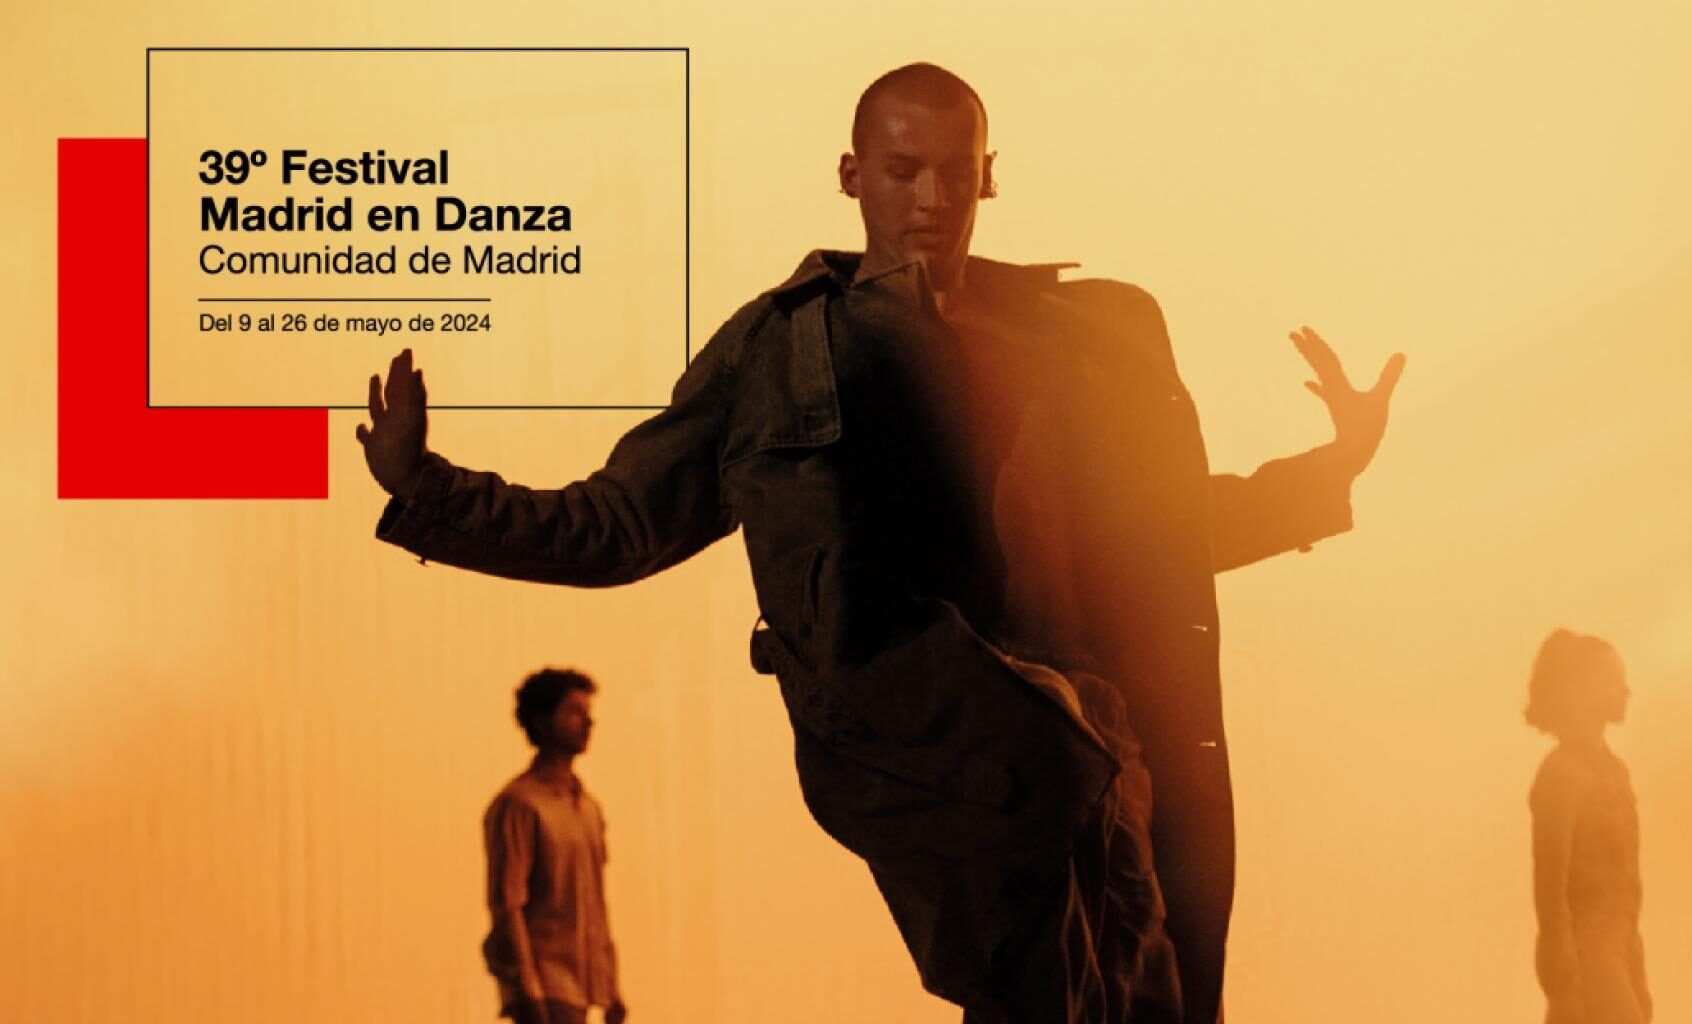 39º Festival Madrid en Danza en Madrid